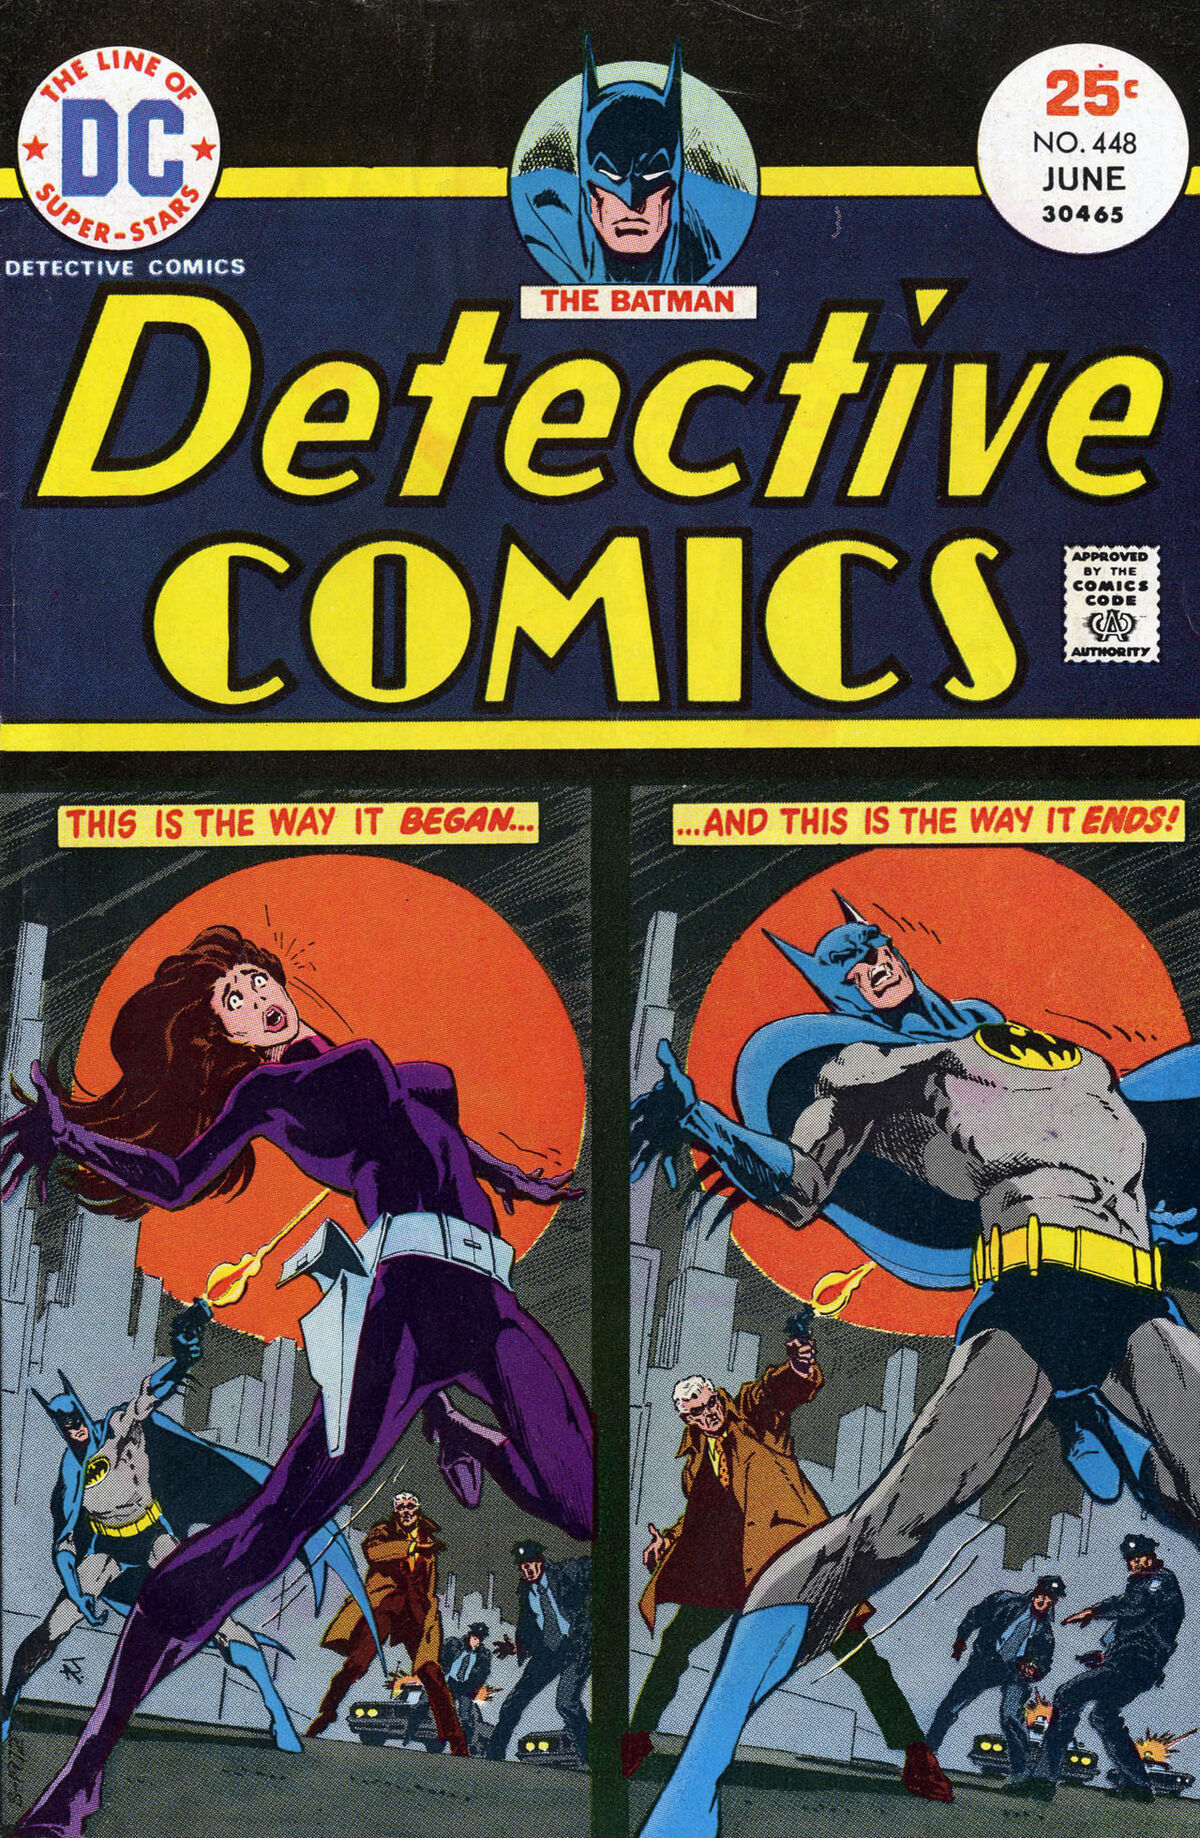 Detective Comics Vol 1 448 | DC Database | Fandom